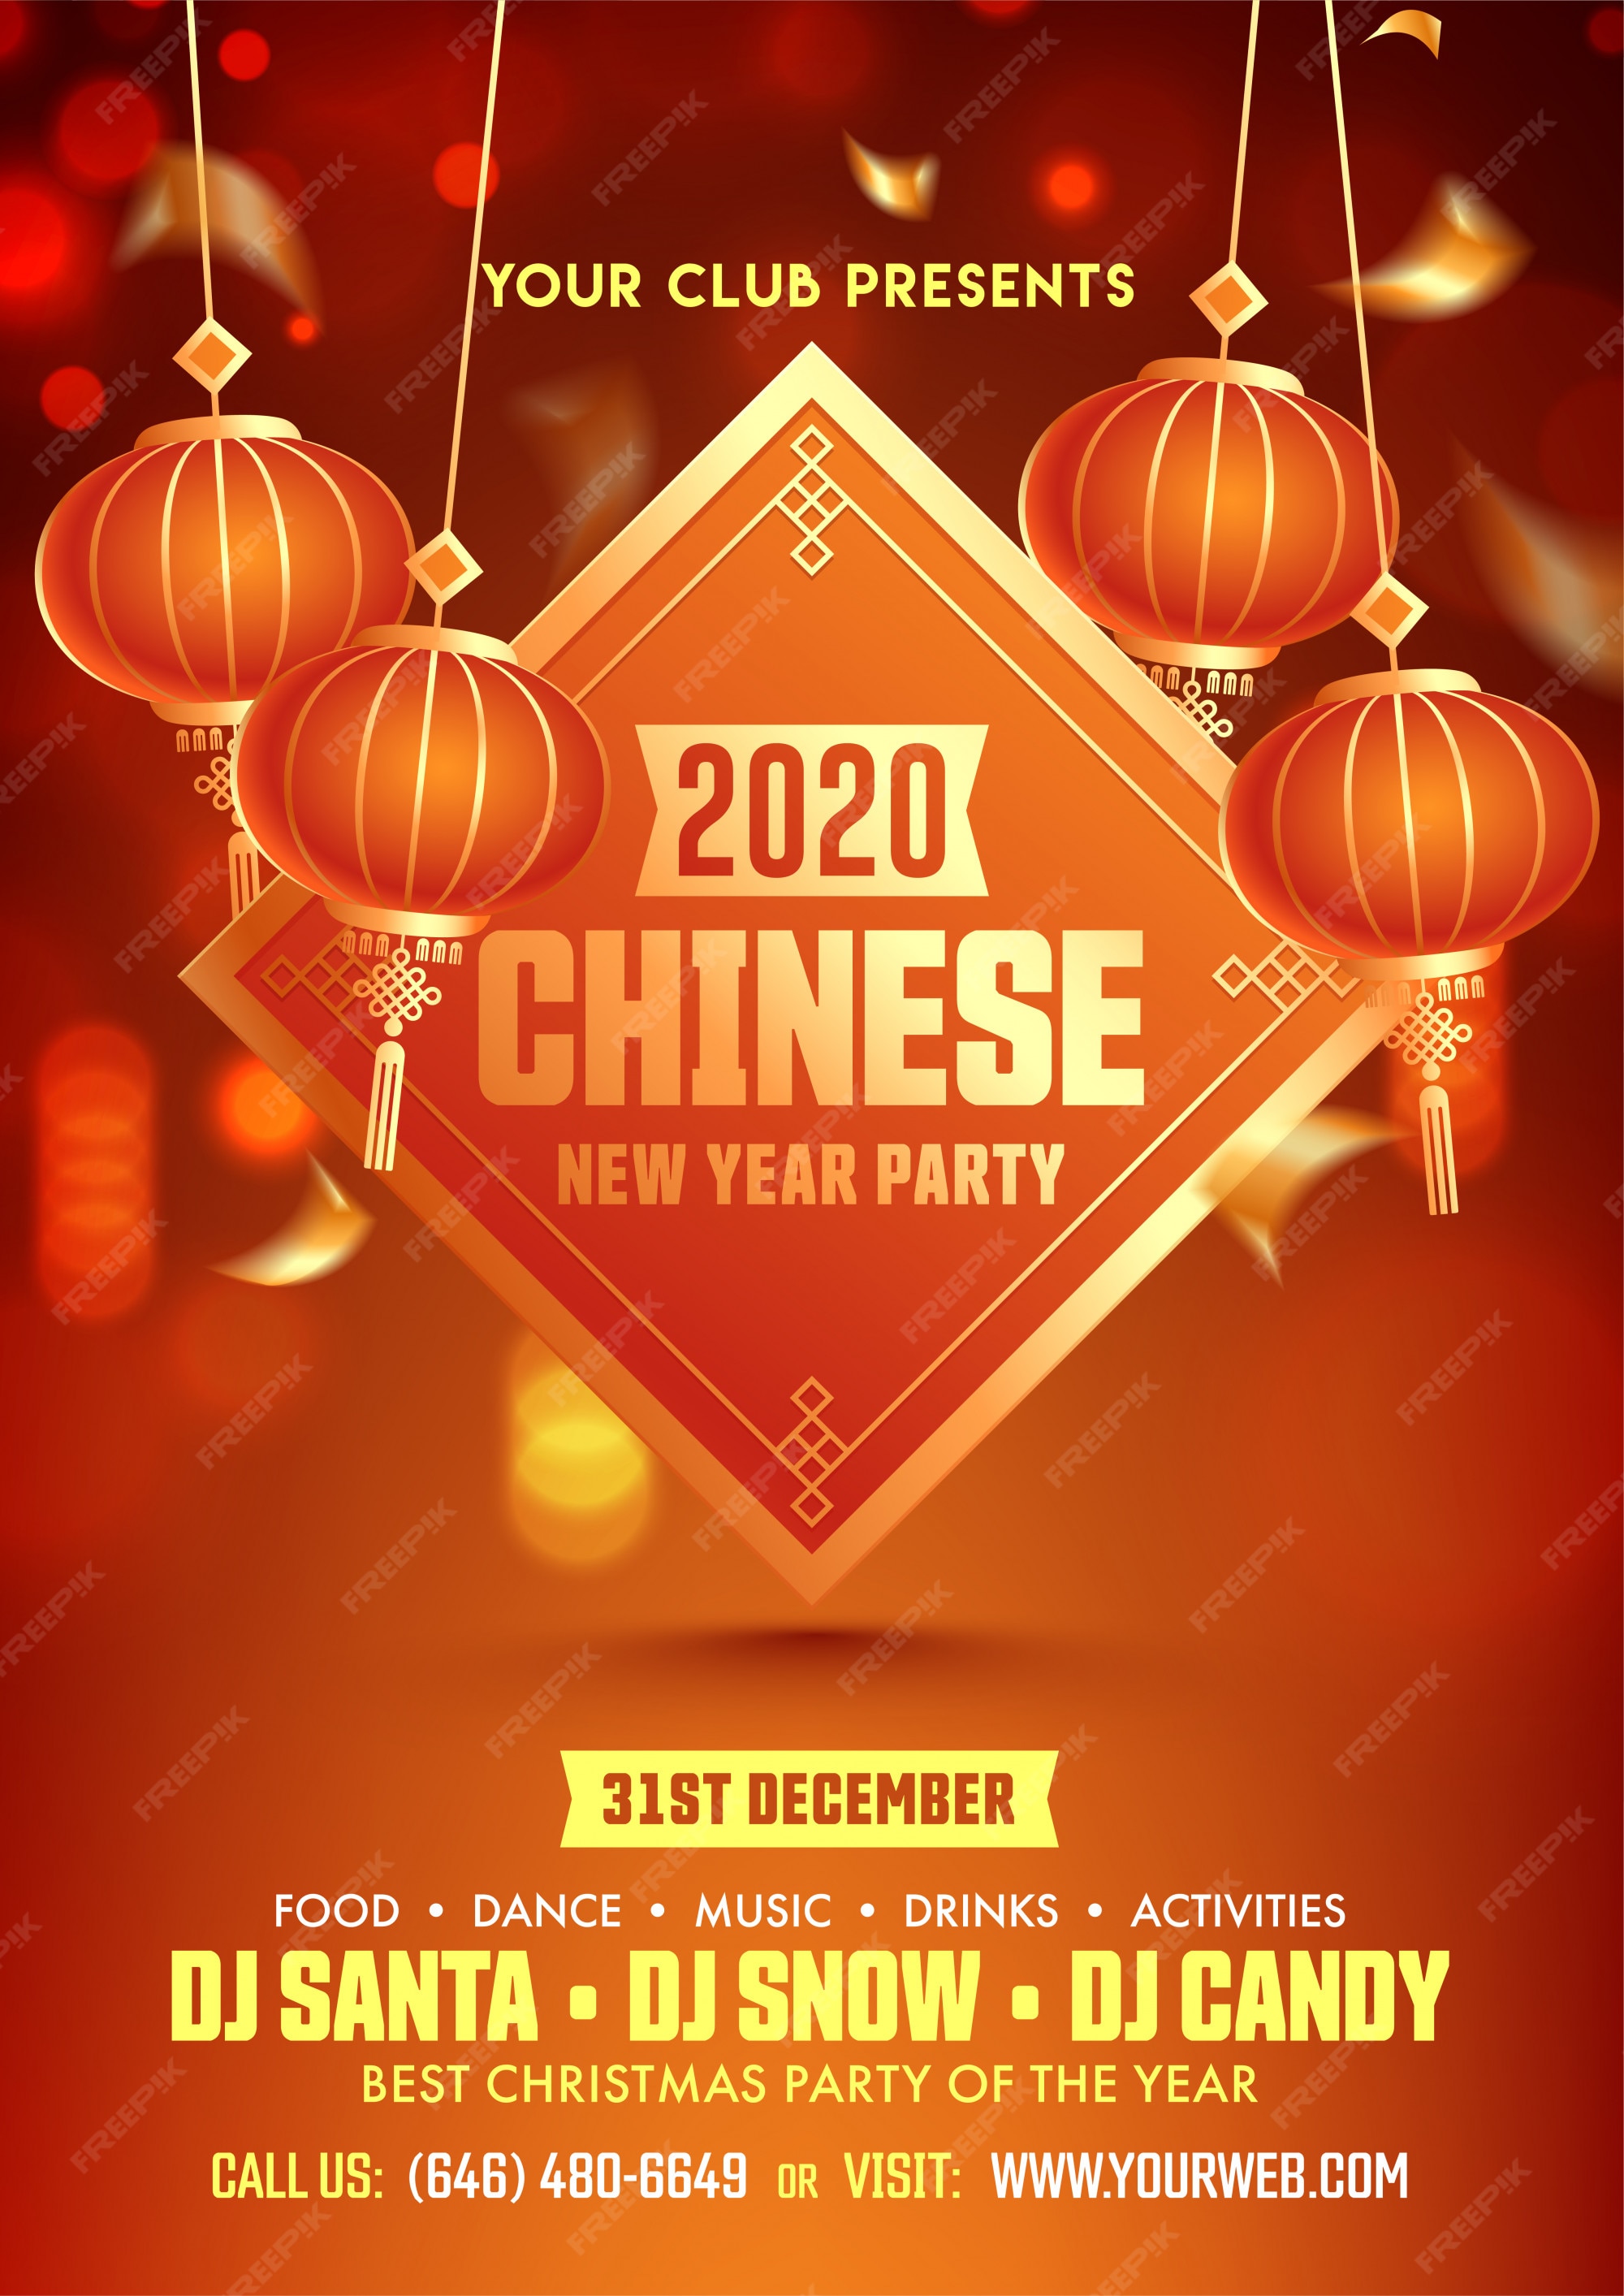 de volante de fiesta del año chino 2020 con linternas colgantes decoradas en marrón | Vector Premium